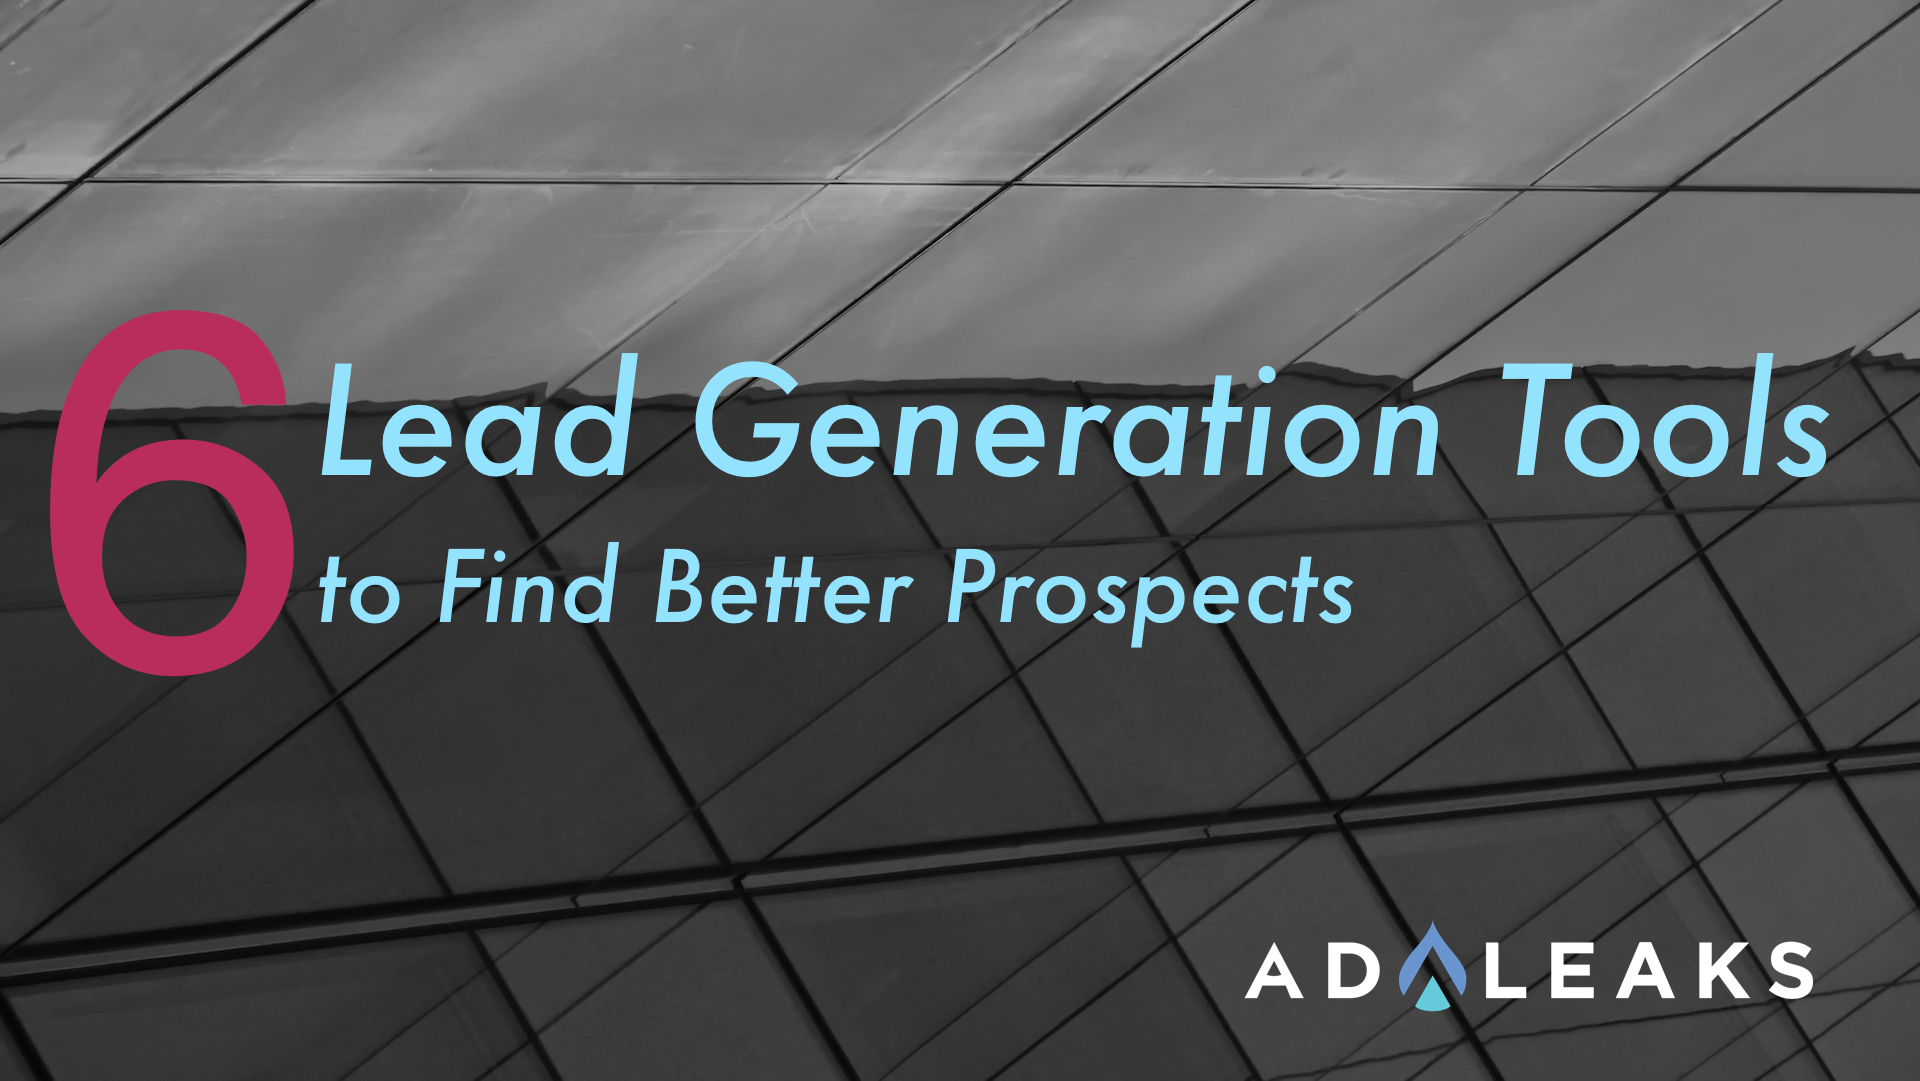 lead generation tools adleaks featured